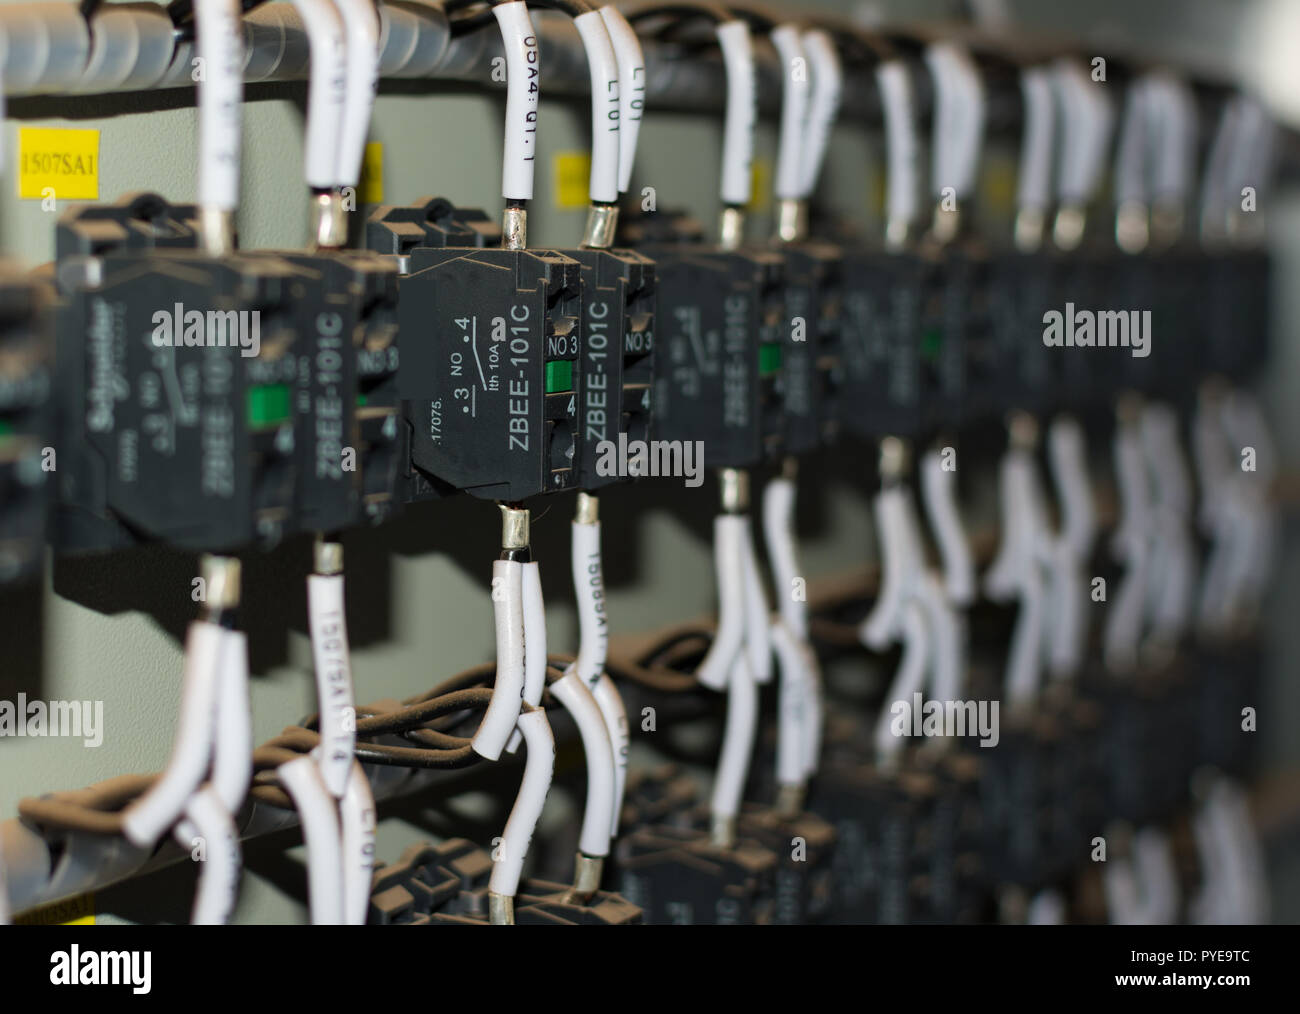 Elektrische Elemente in einem Schaltschrank Stockfotografie - Alamy